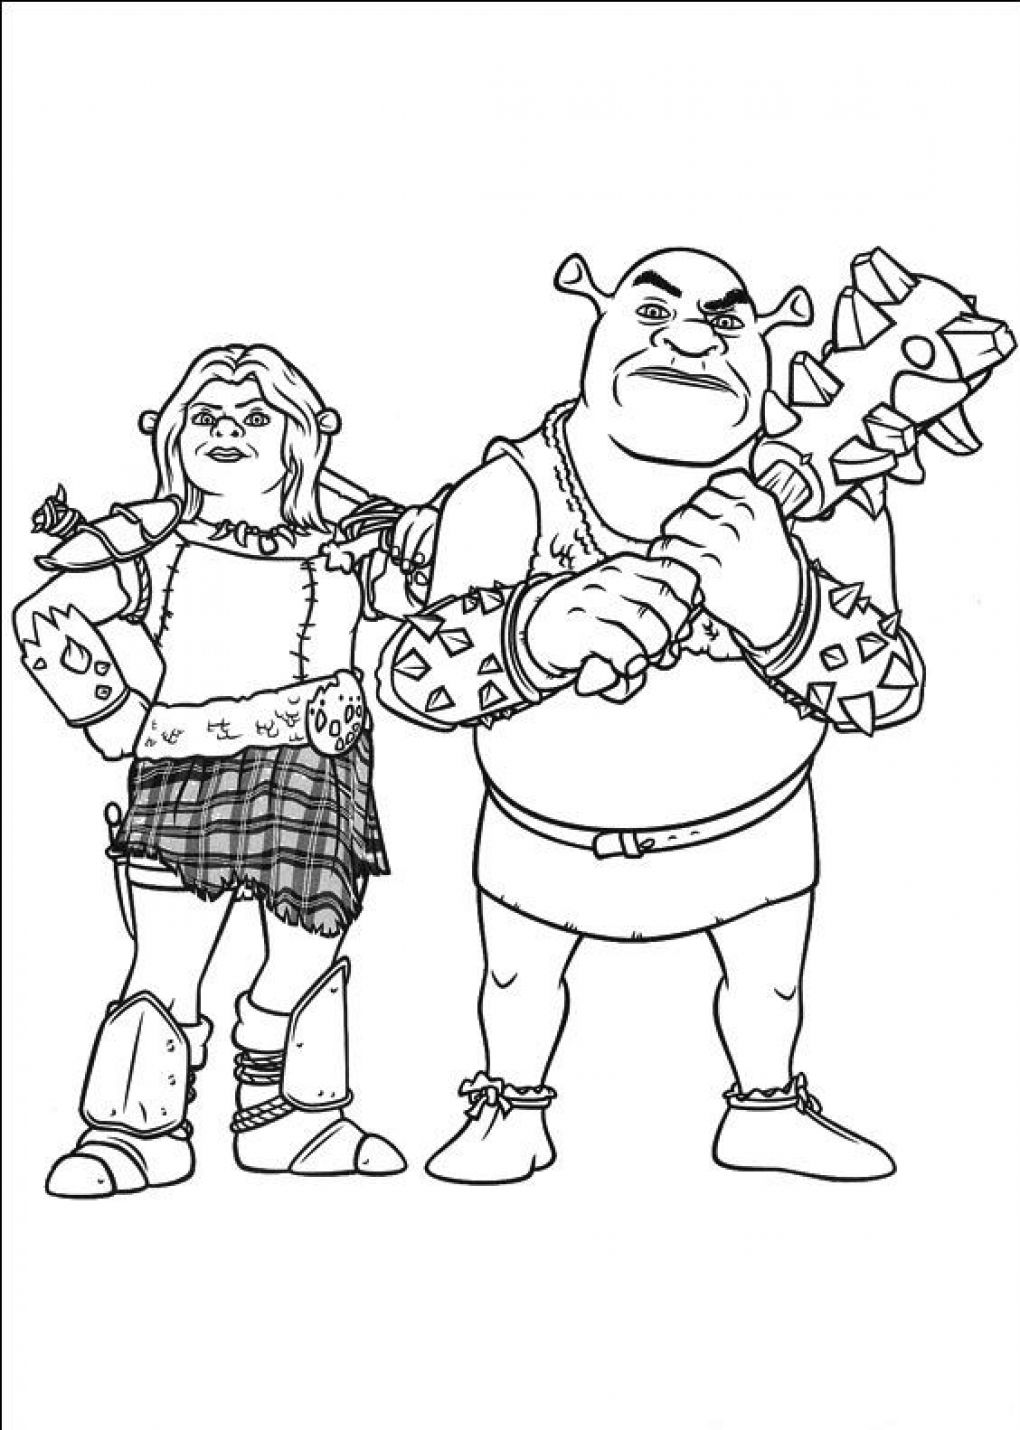 Visual de Shrek 4, com Shrek e Fiona, o Guerreiro